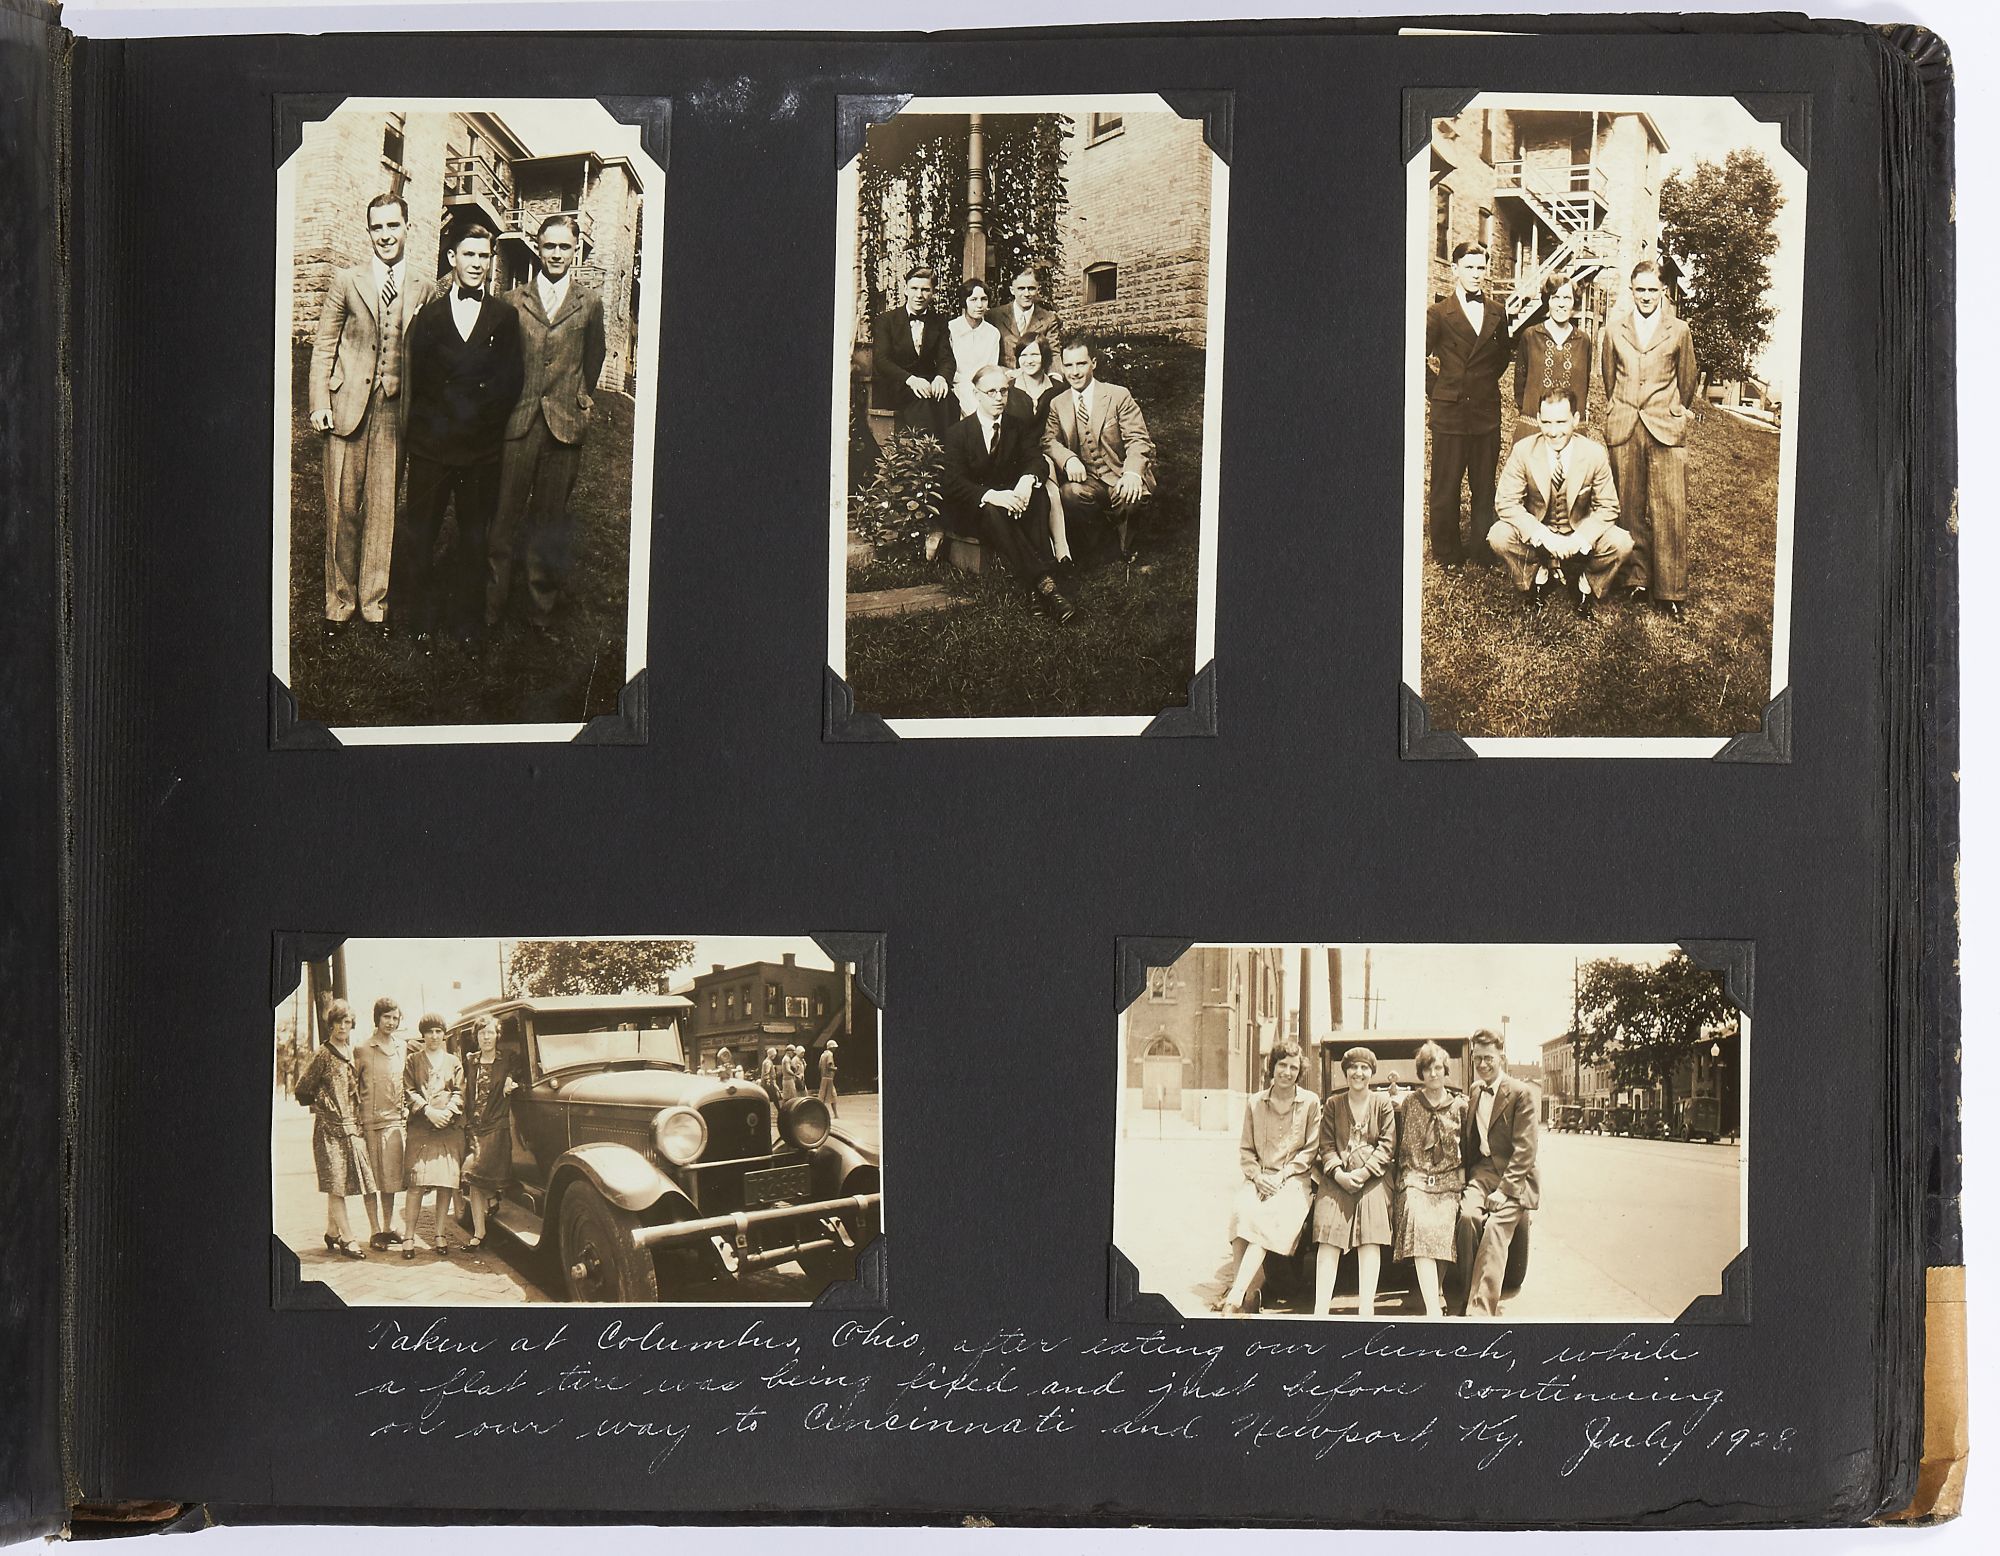 1920s travelling photo album.